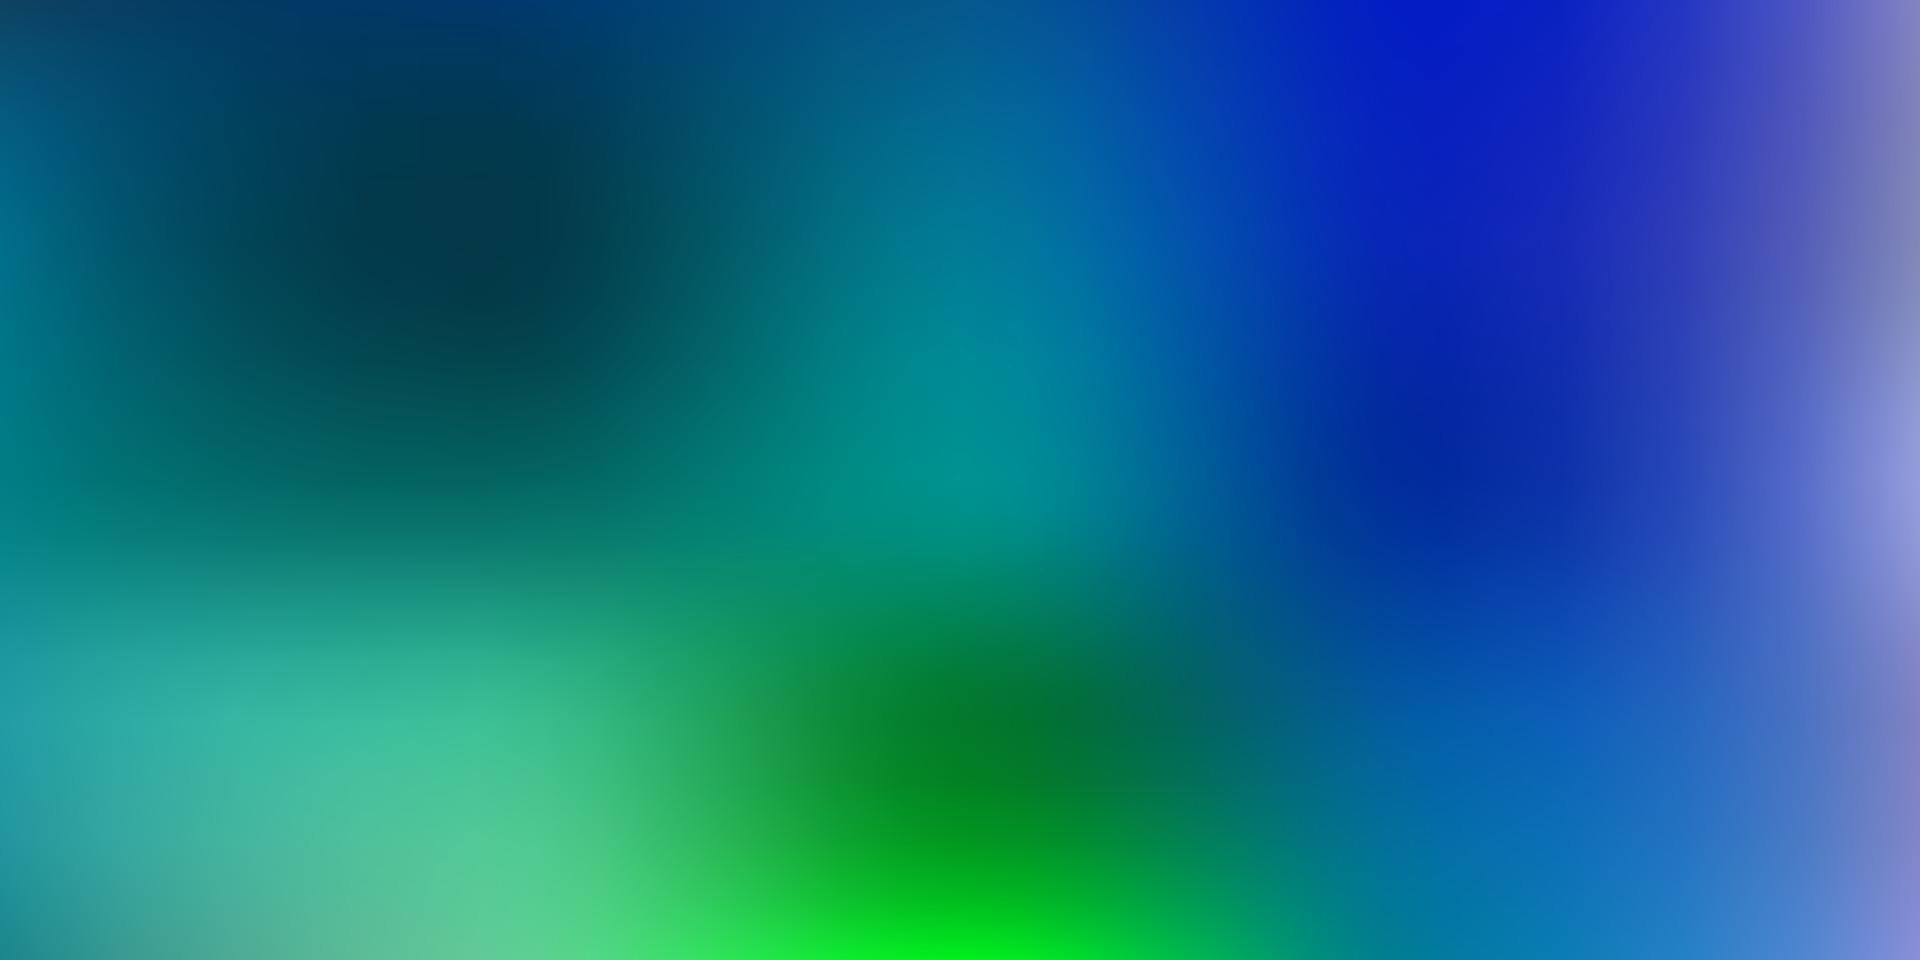 Light blue, green vector blurred texture.